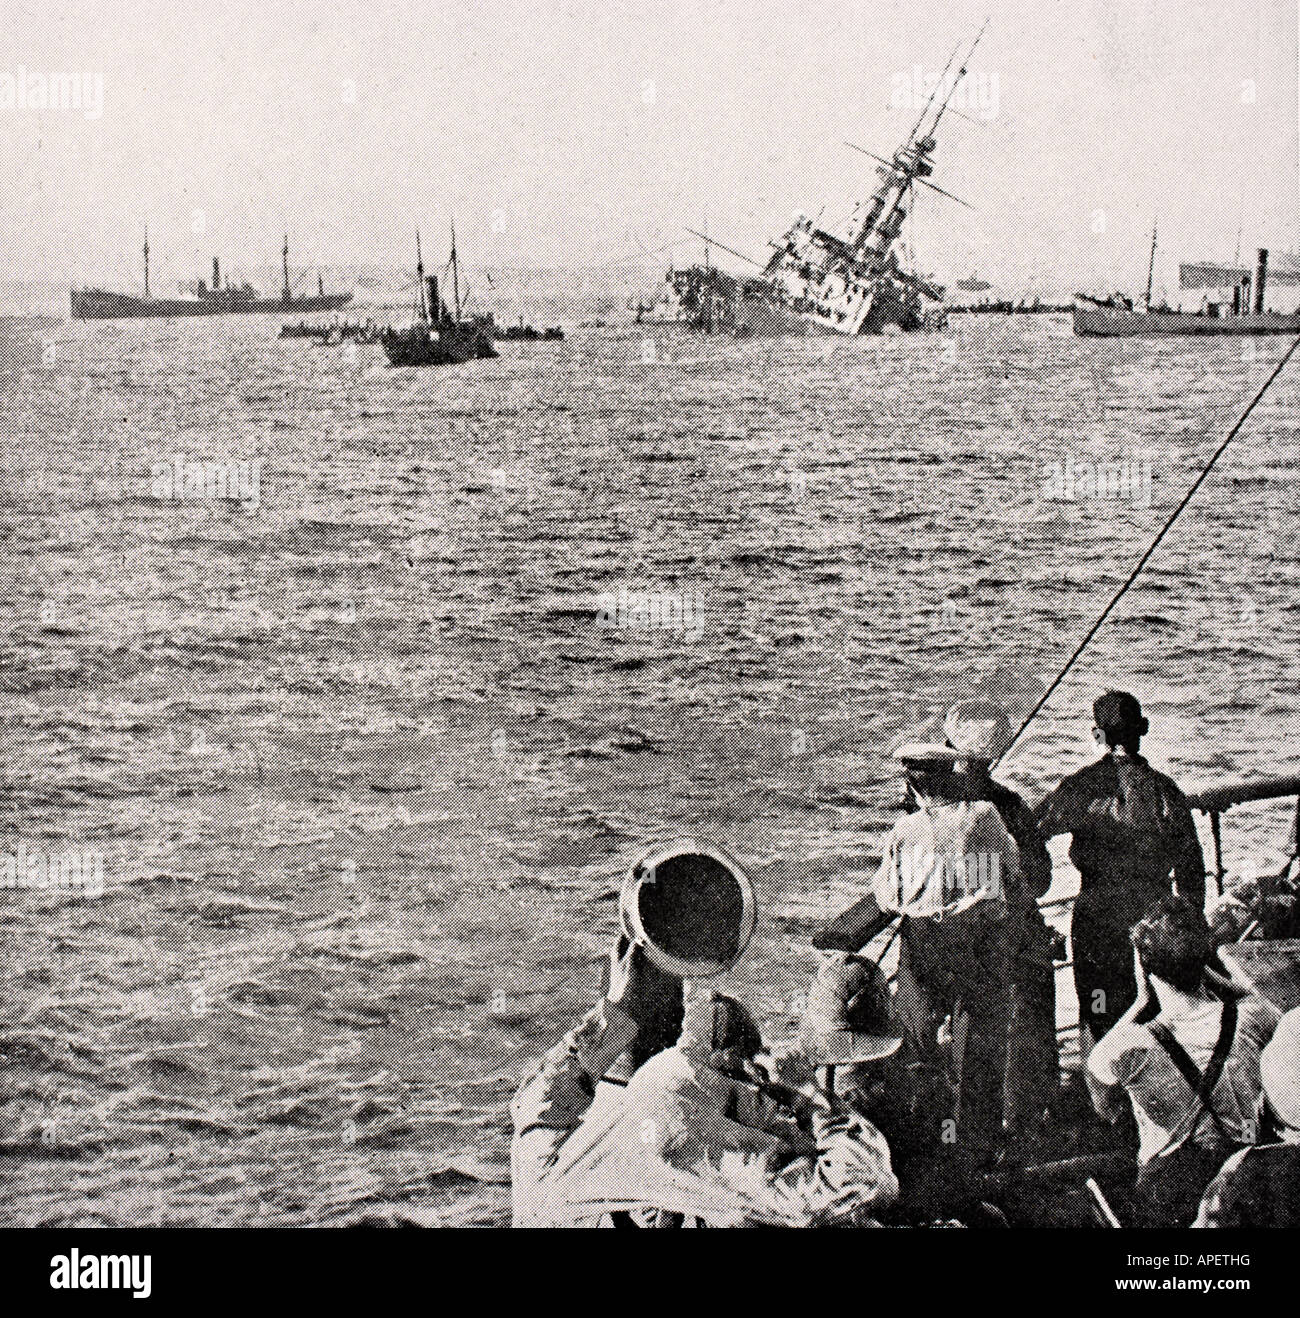 HMS Majestic sinkt am 27. Mai 1915, nachdem sie während des Ersten Weltkriegs vor der Halbinsel Gallipoli in der Türkei getroffen wurde. Stockfoto